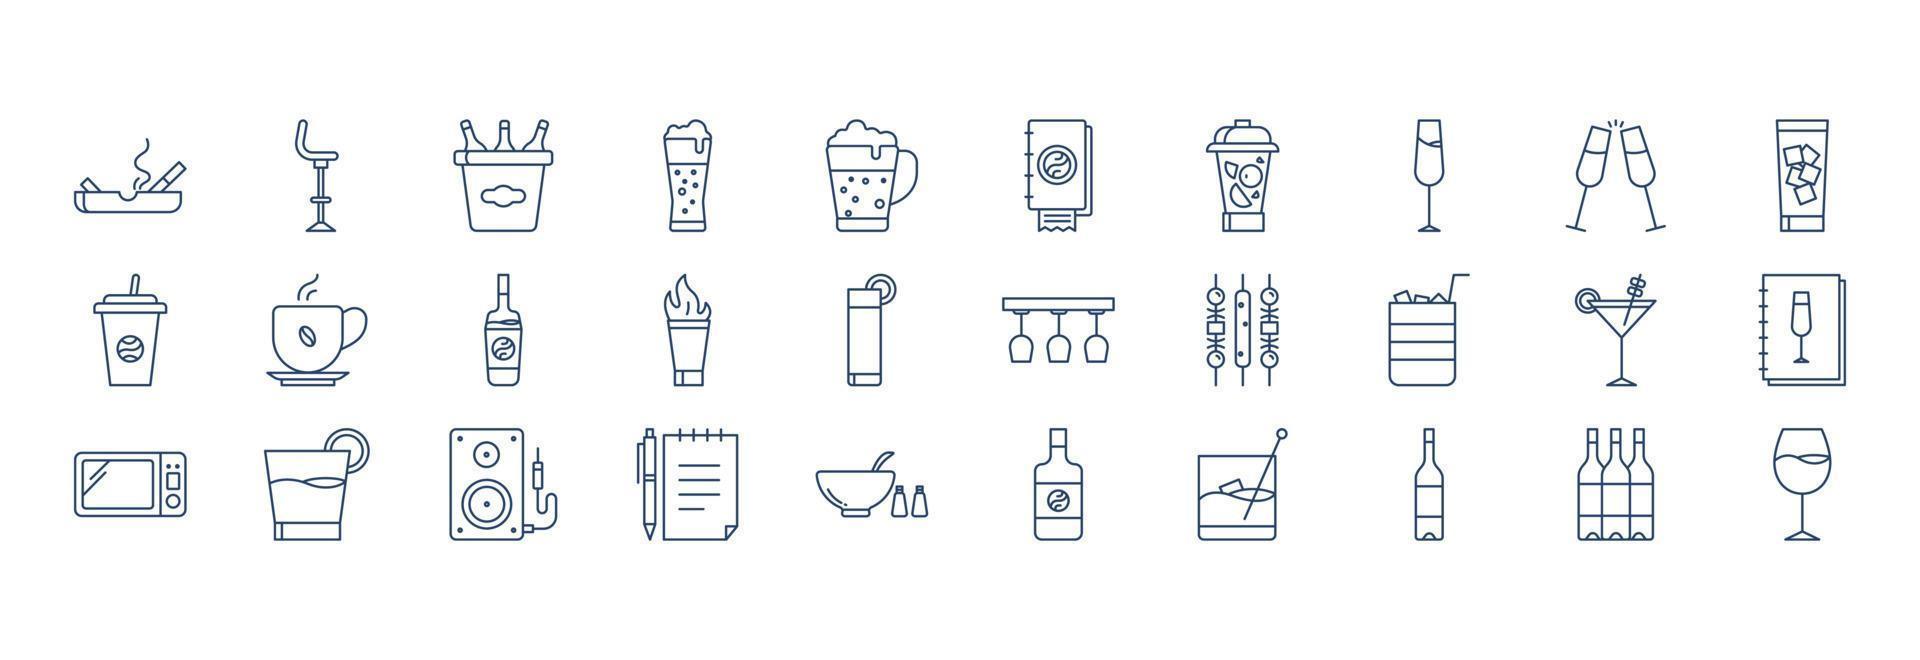 verzameling van pictogrammen verwant naar bar en cafe, inclusief pictogrammen Leuk vinden bier glas, Champagne, cocktail en meer. vector illustraties, pixel perfect reeks